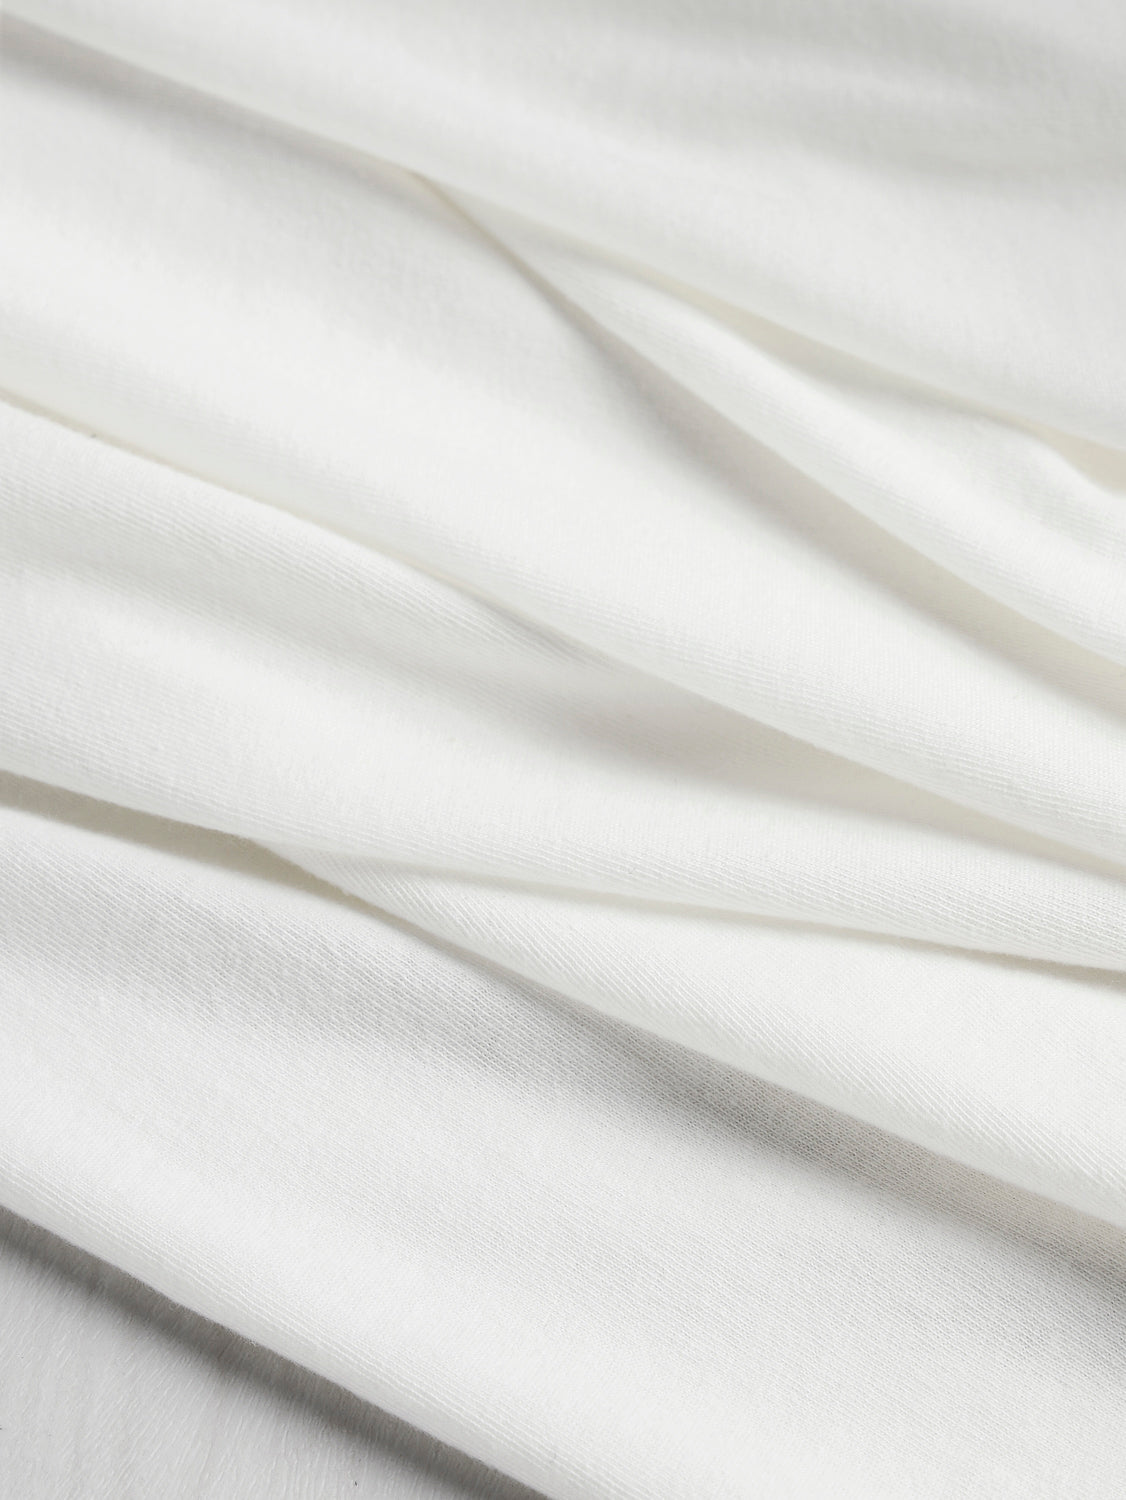 Cotton Modal Jersey Knit - White